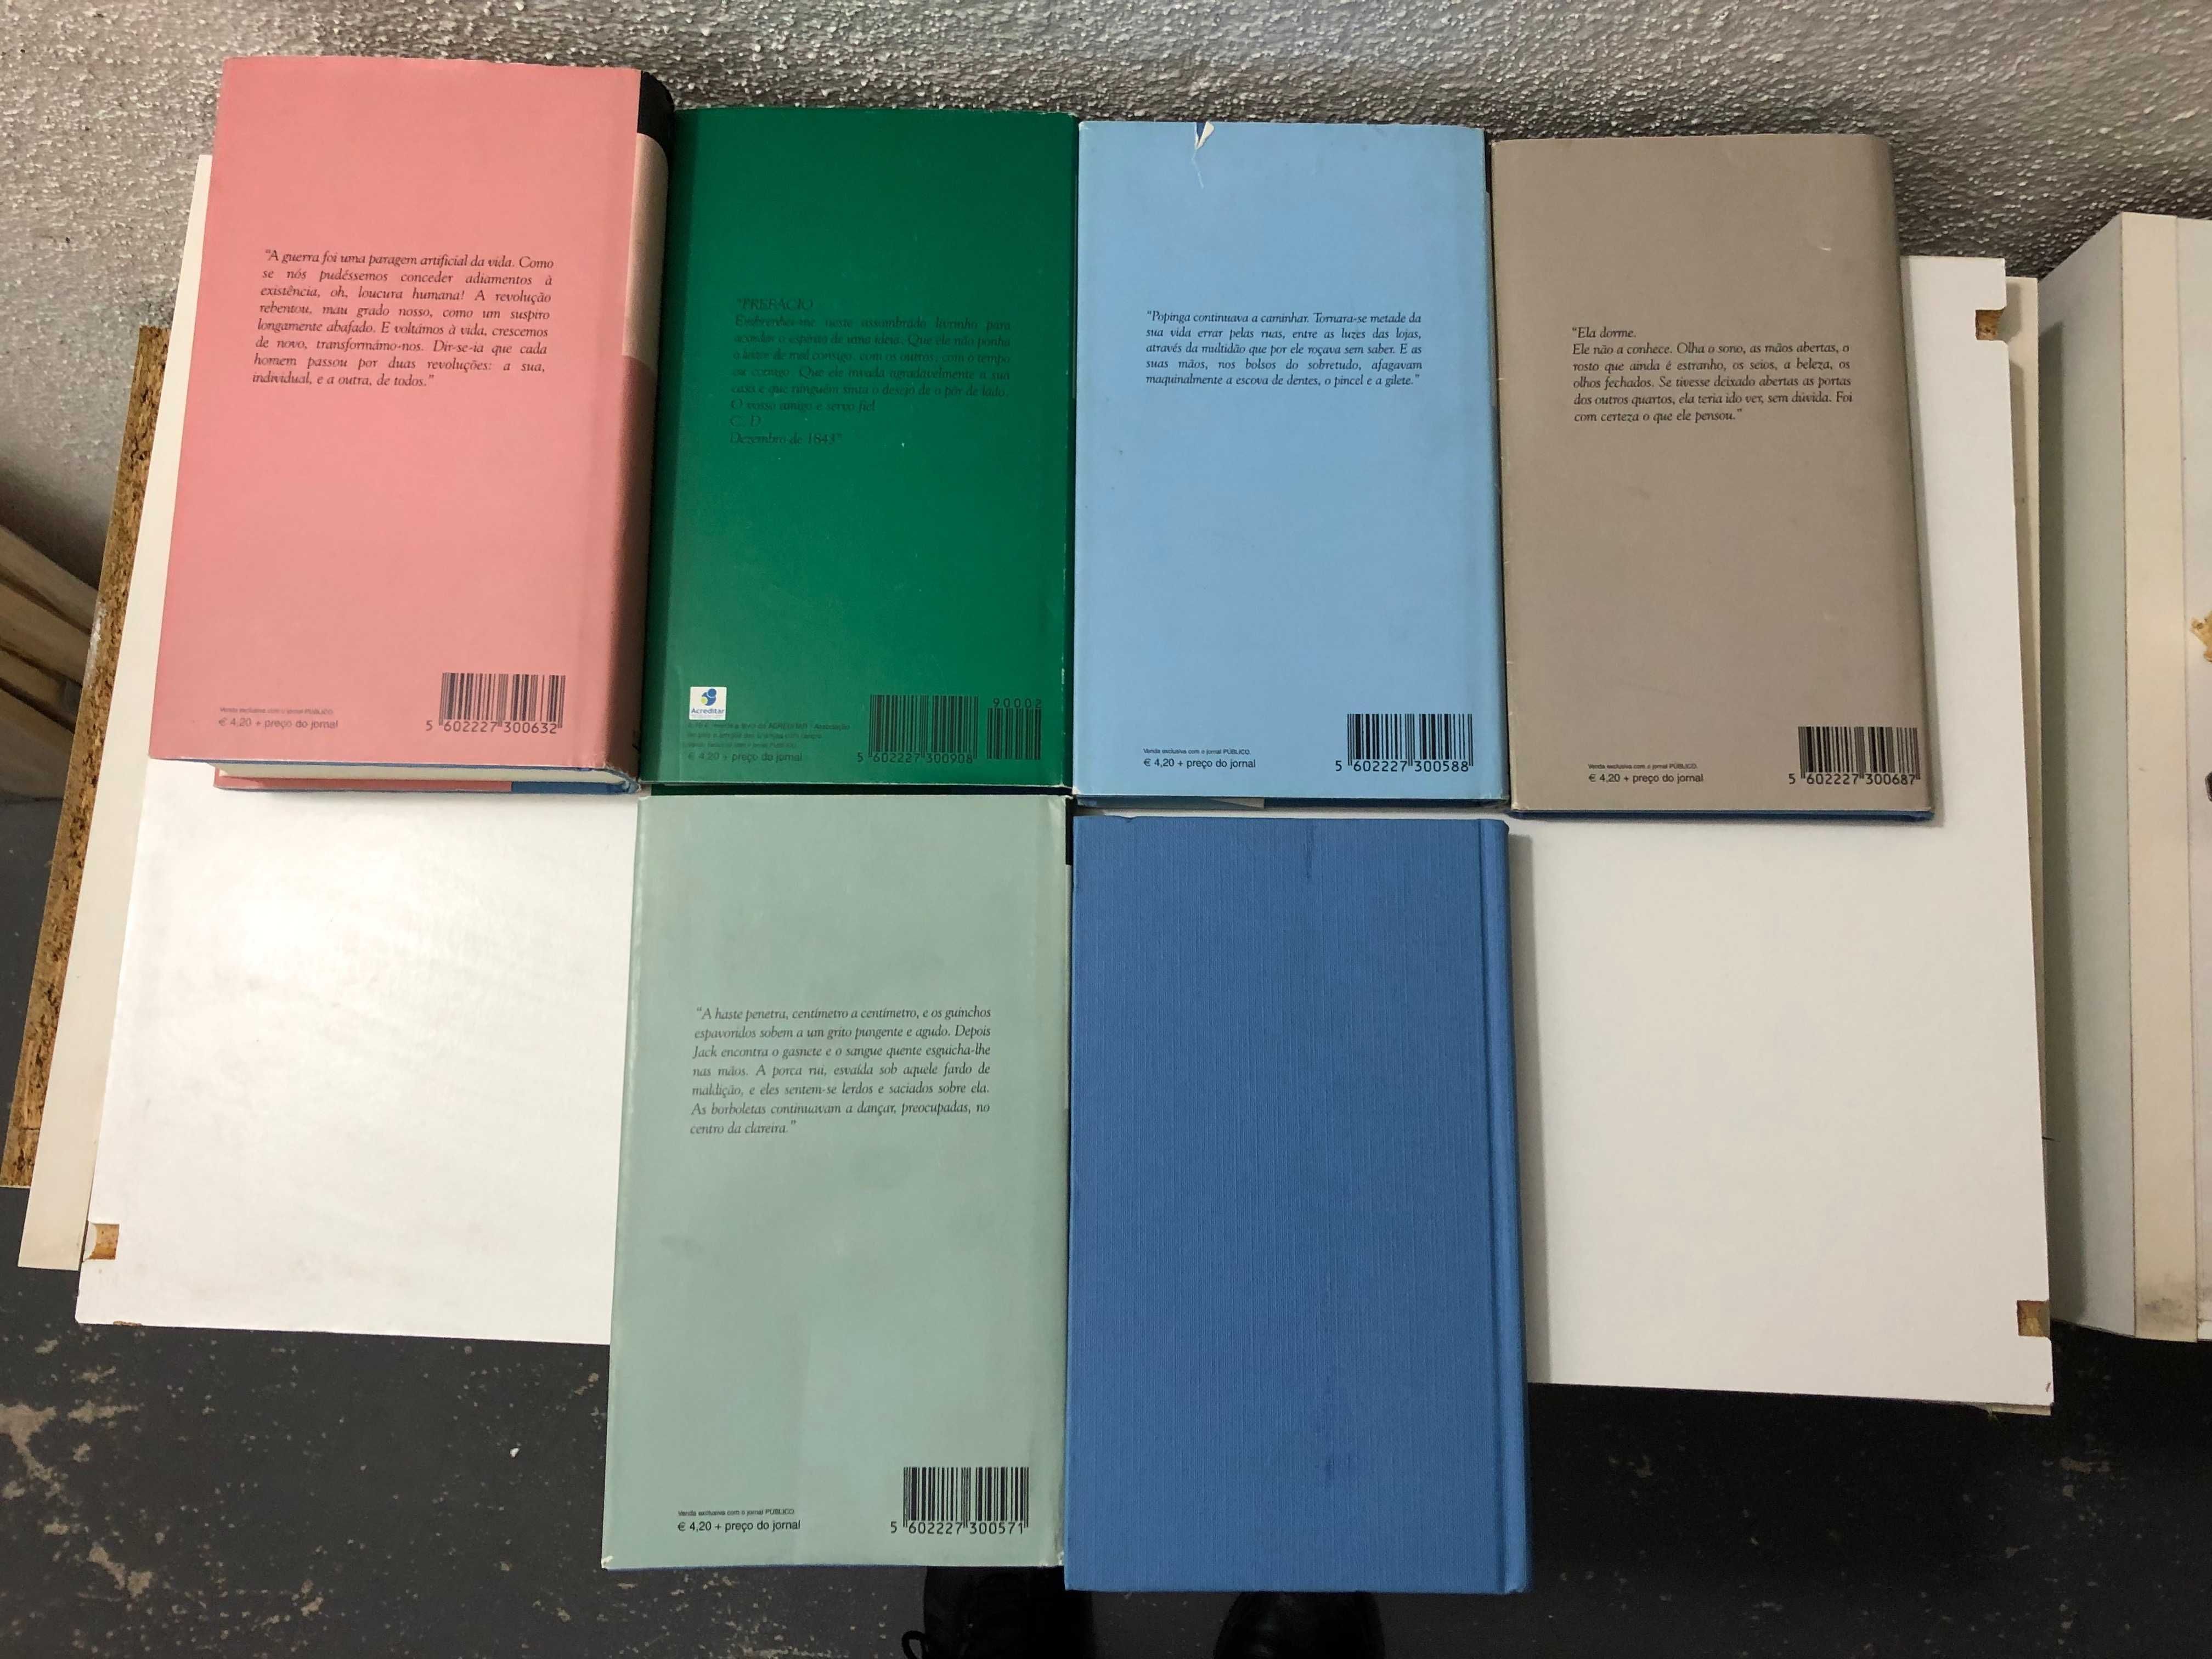 Livros Colecção Mil Folhas Público. Capa dura azul com capa de papel.